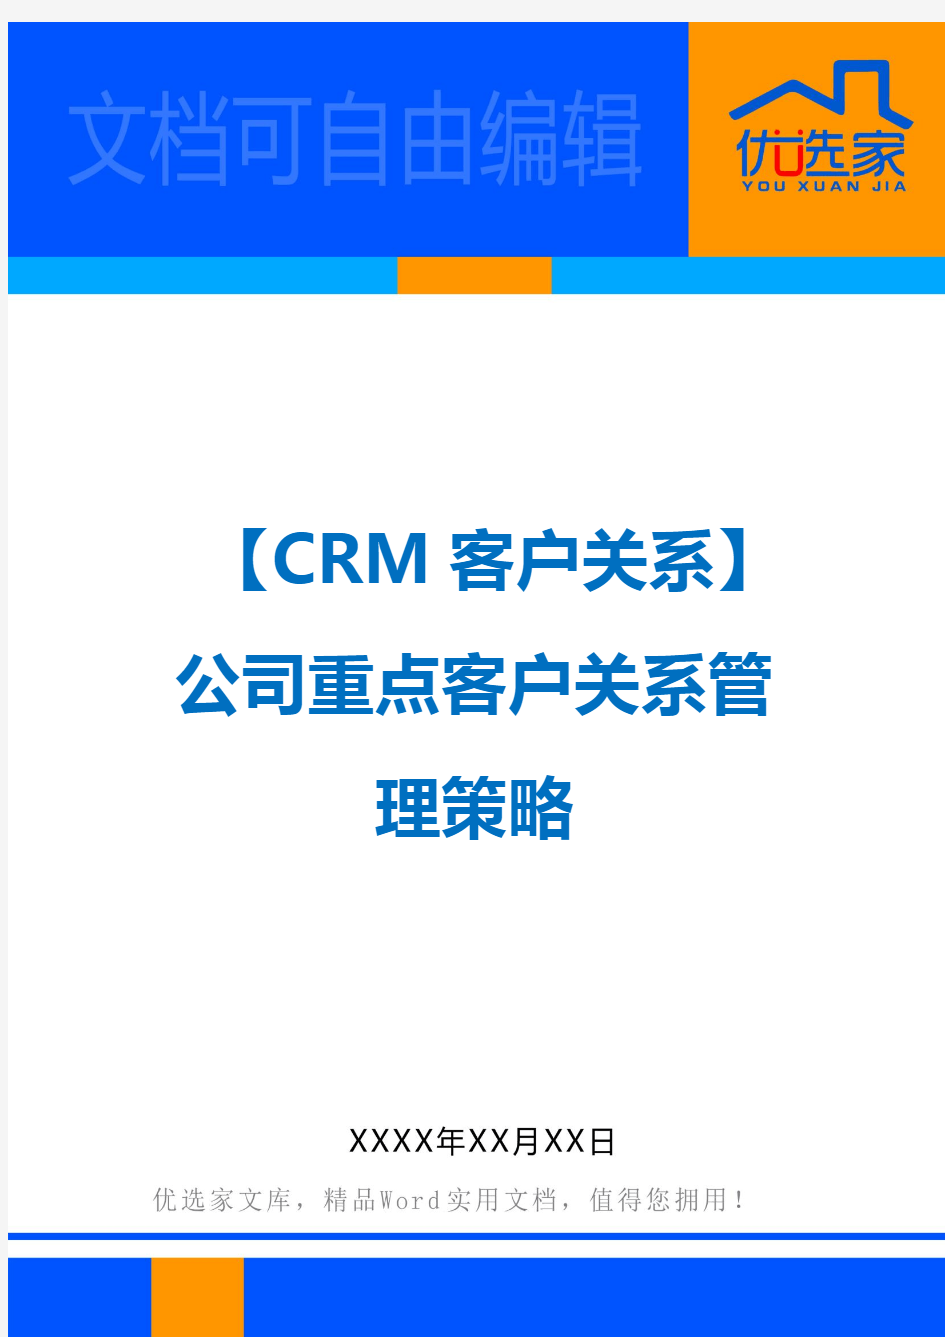 【CRM客户关系】公司重点客户关系管理策略